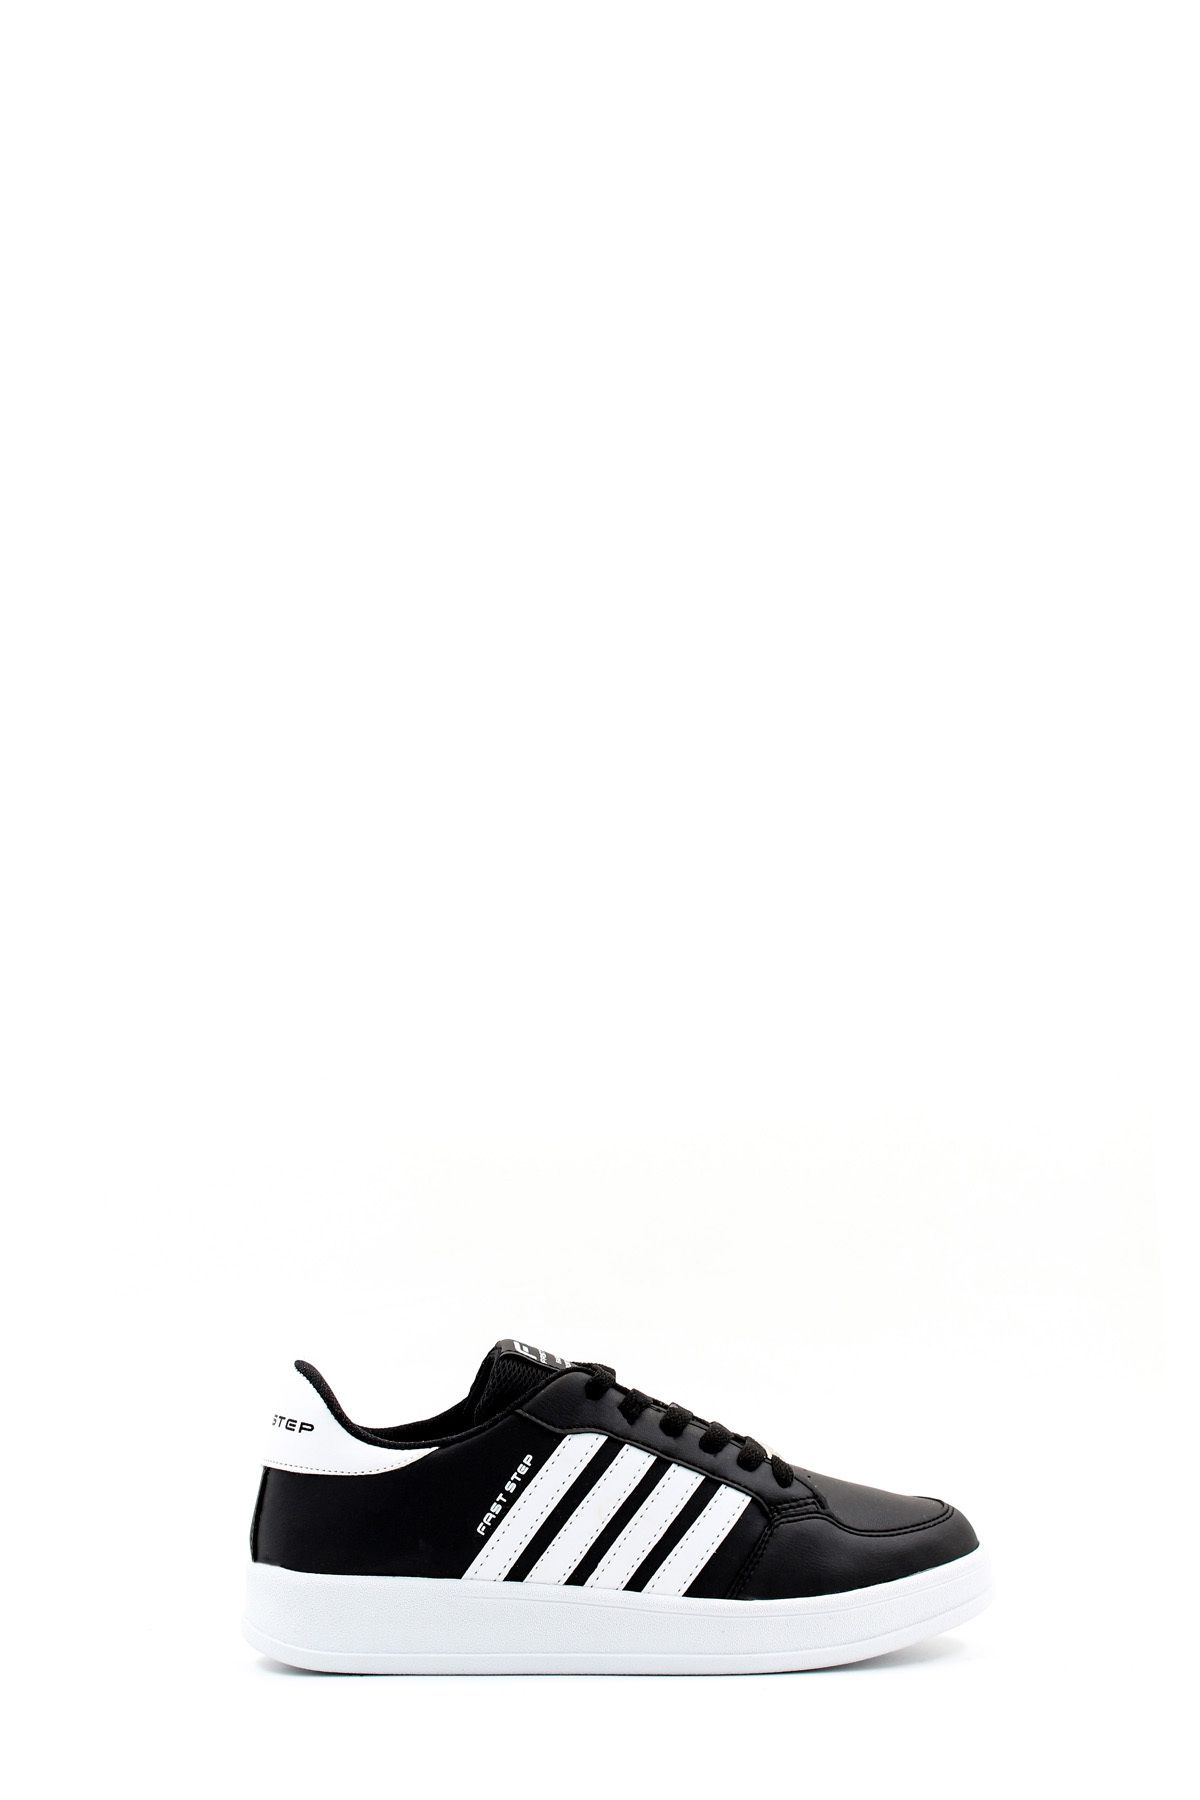 Fast Step Unisex Siyah Günlük Rahat Spor Ayakkabı Sneaker 930xa019